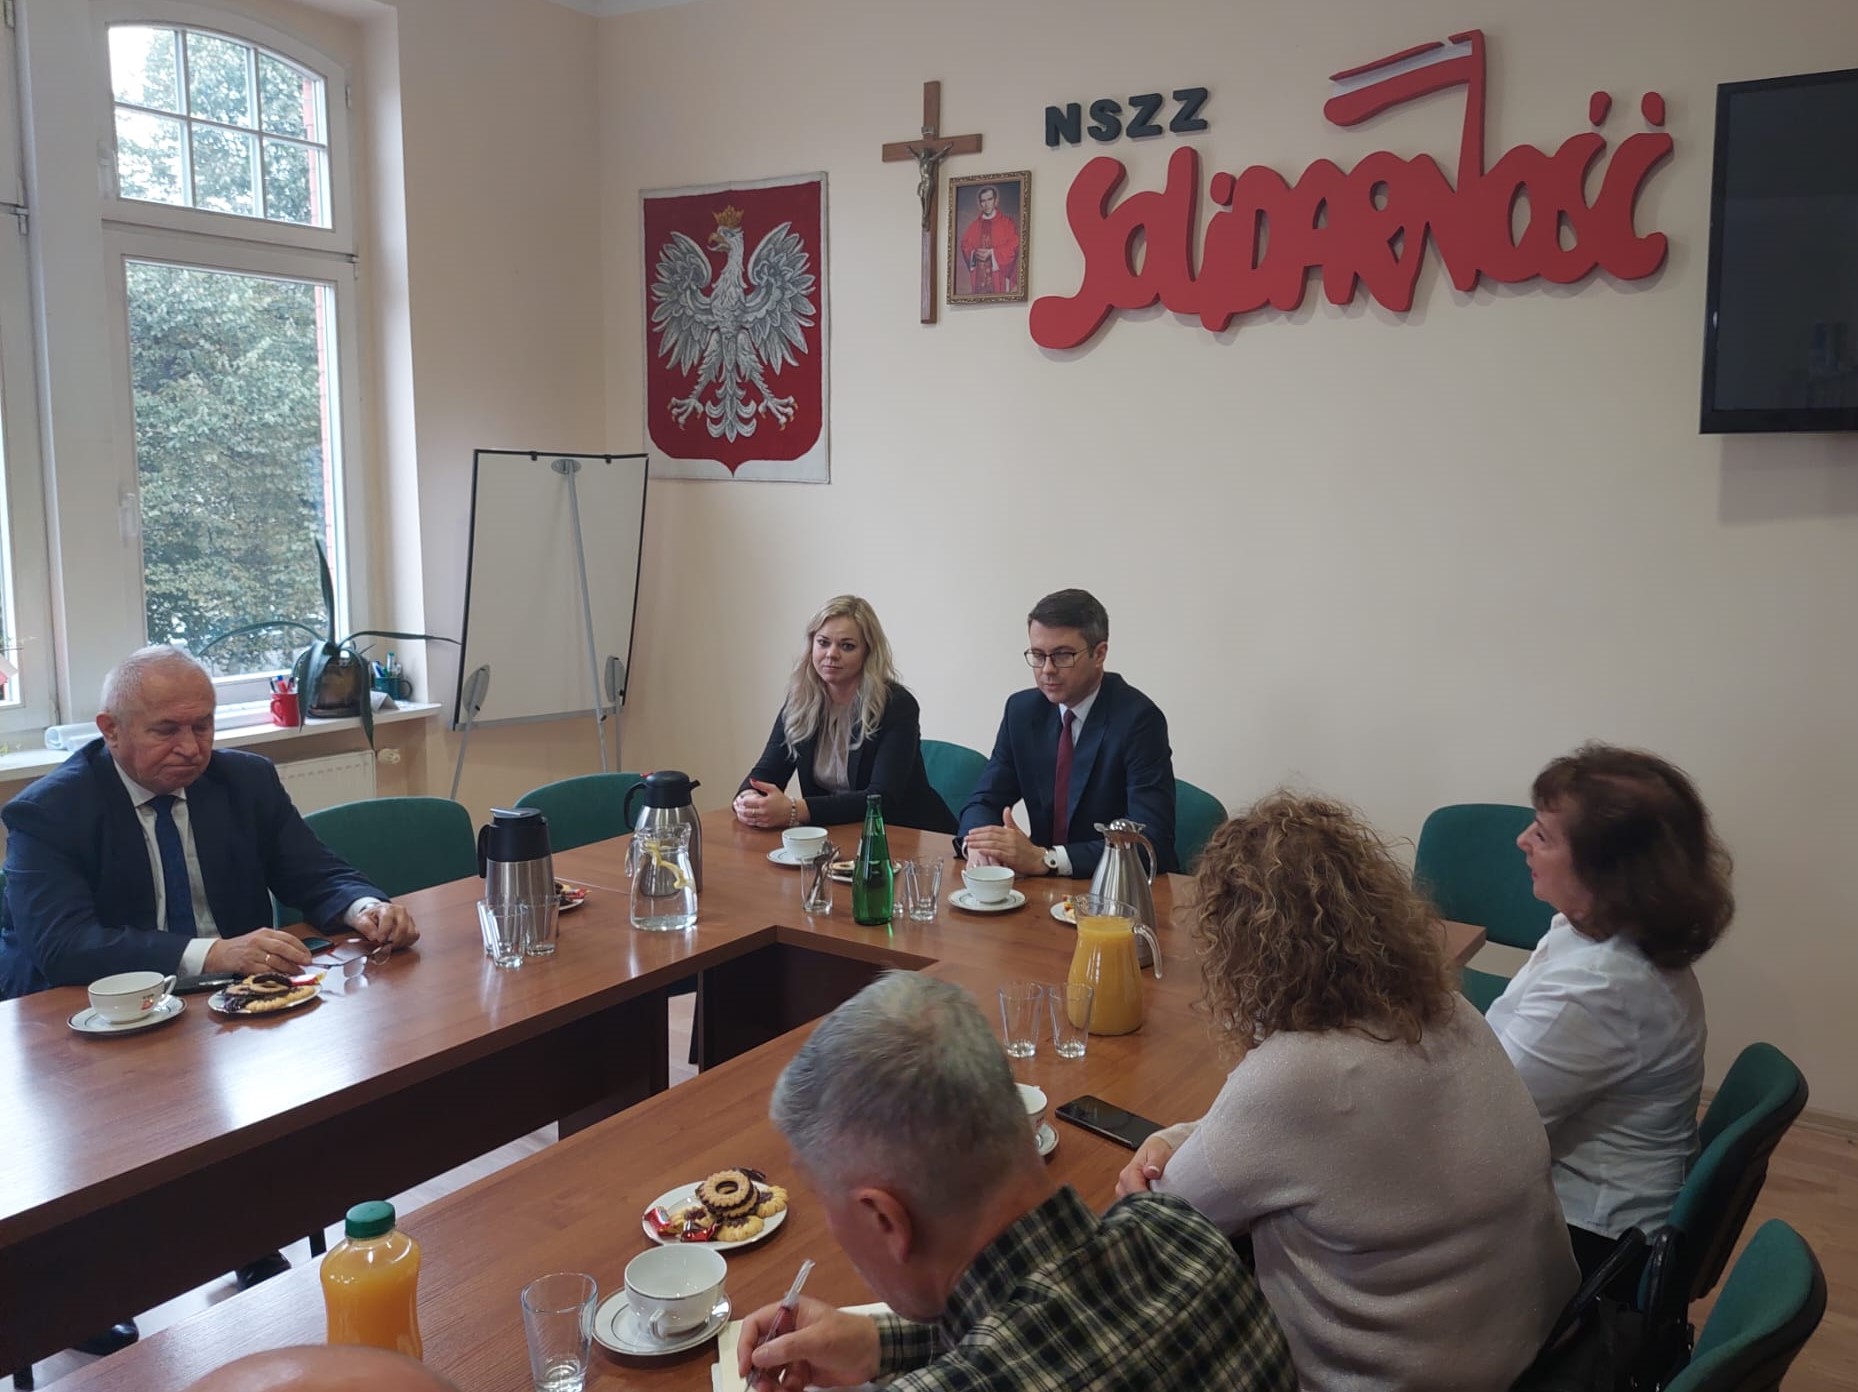 Podczas dzisiejszej wizyty w Słupsku poseł na Sejm Piotr Müller spotkał się z przedstawicielami NSZZ Solidarność Regionu Słupskiego. Głównymi tematami rozmów były kwestie związane z energetyką, gospodarką i sprawami pracowniczymi.